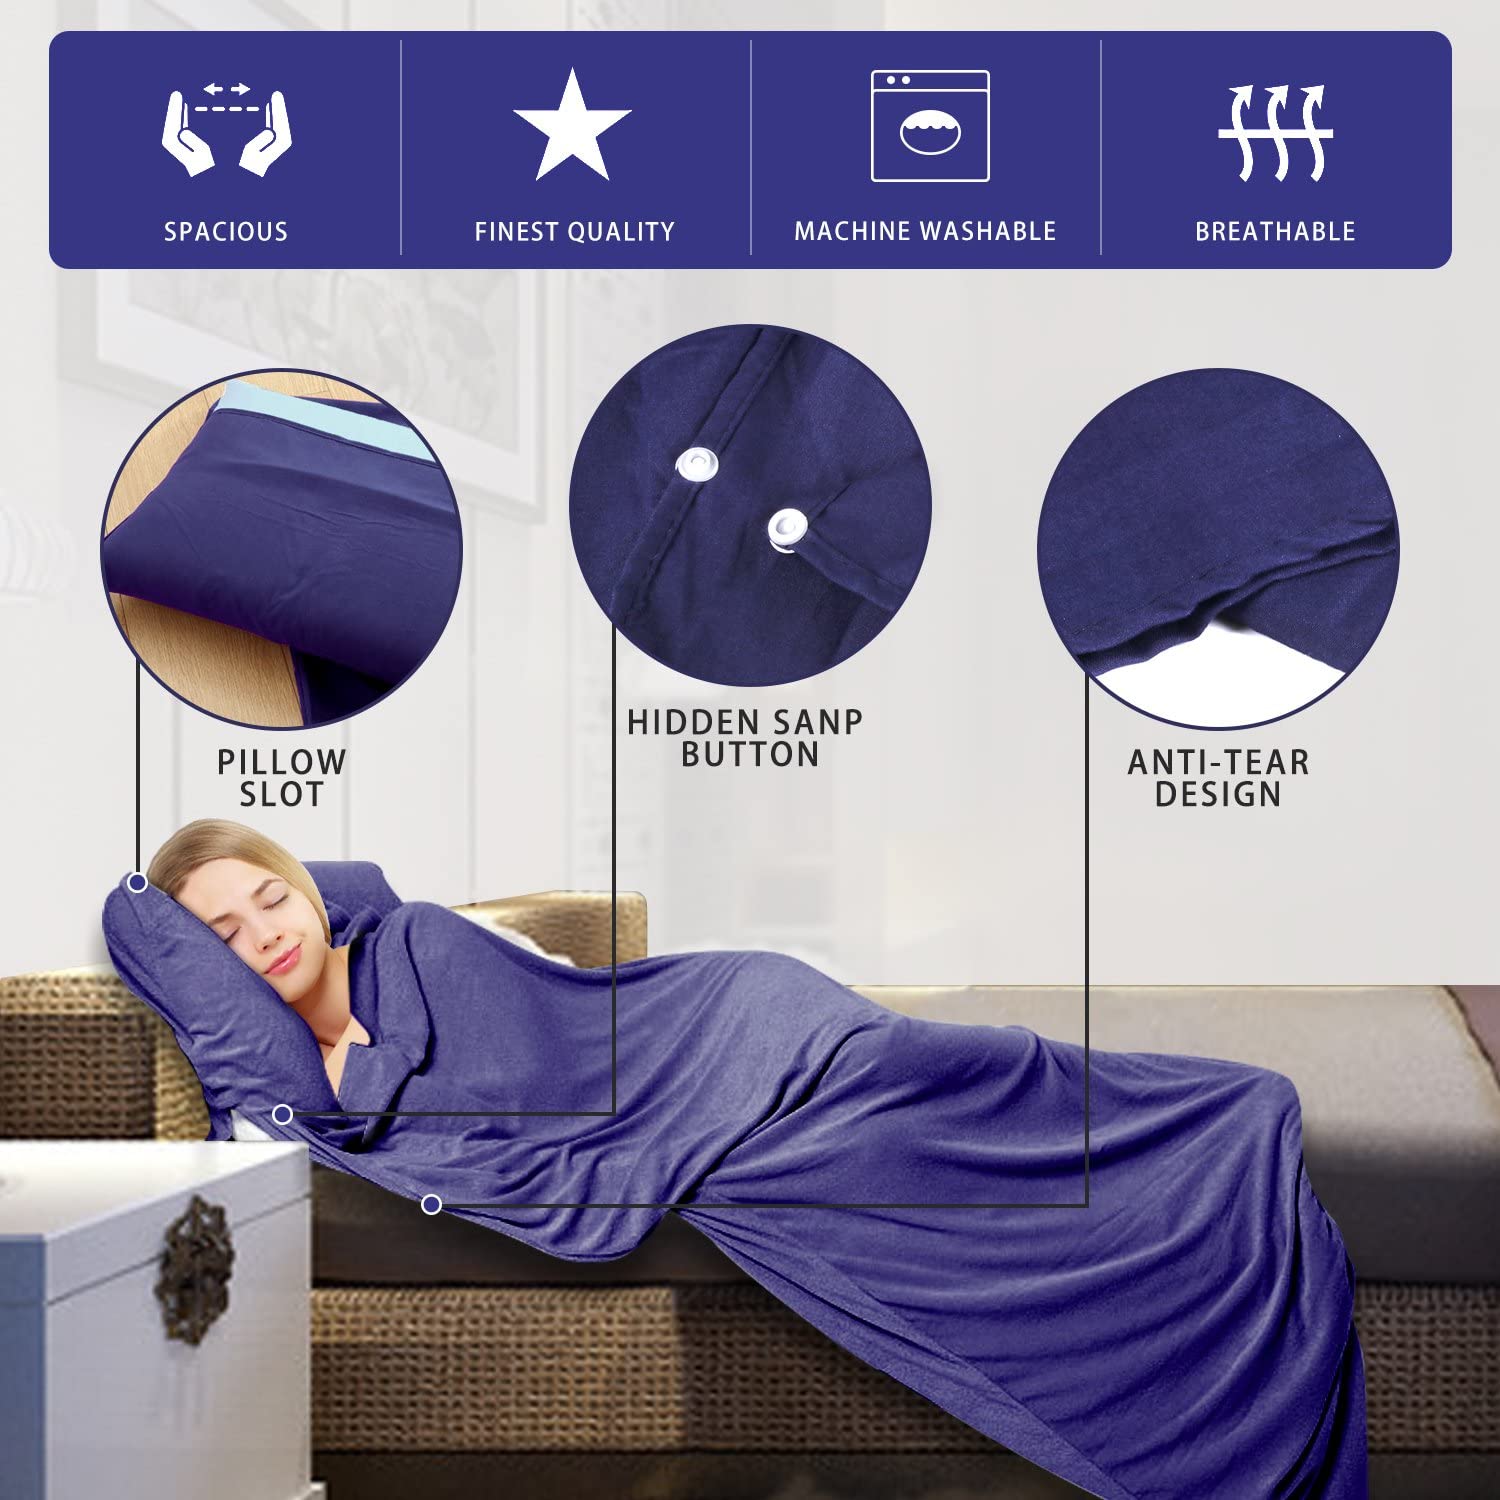 Sovepose liner super let enkelt / dobbelt person sovepose til camping vandrehotel bærbar med kompression